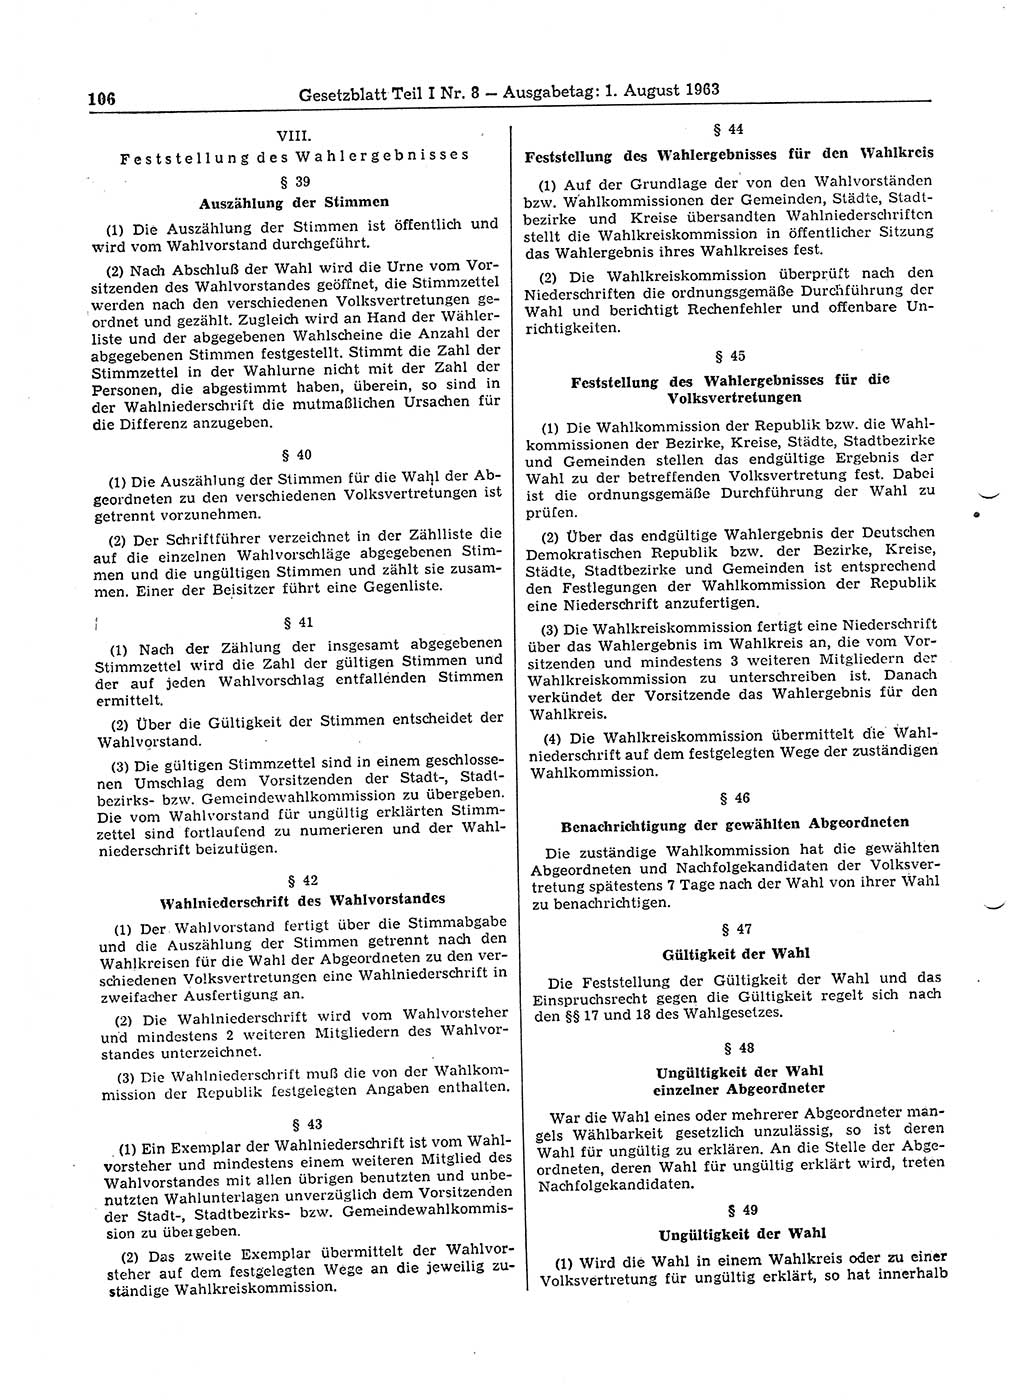 Gesetzblatt (GBl.) der Deutschen Demokratischen Republik (DDR) Teil Ⅰ 1963, Seite 106 (GBl. DDR Ⅰ 1963, S. 106)